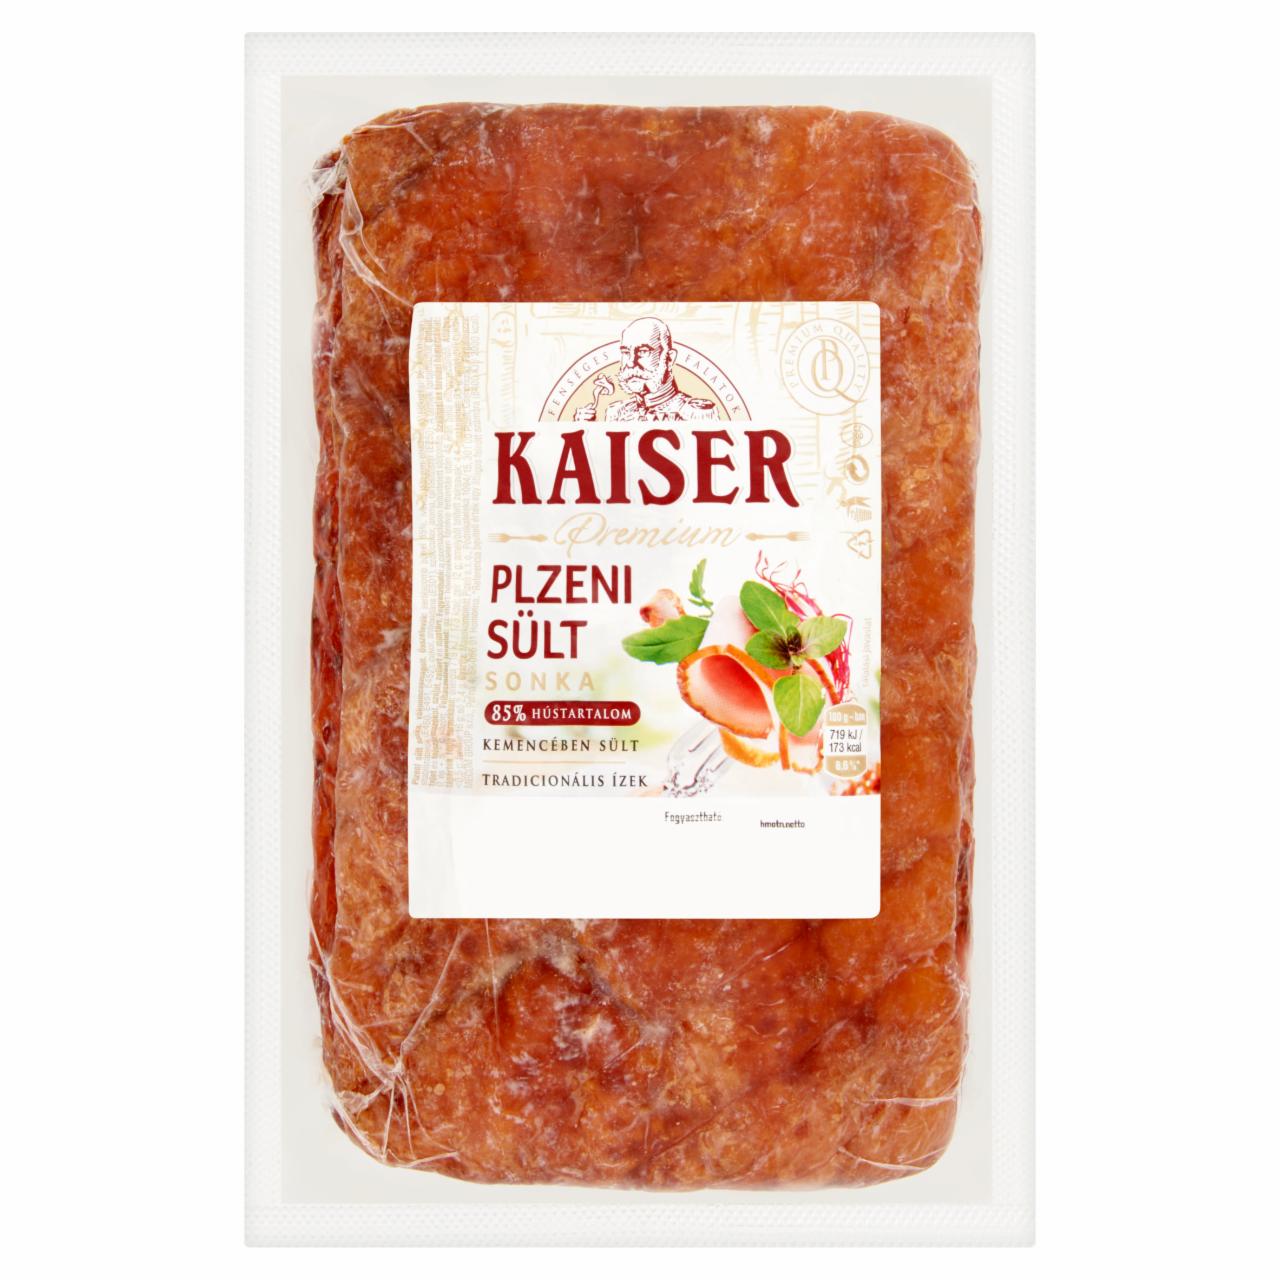 Képek - Kaiser Premium plzeni sült sonka